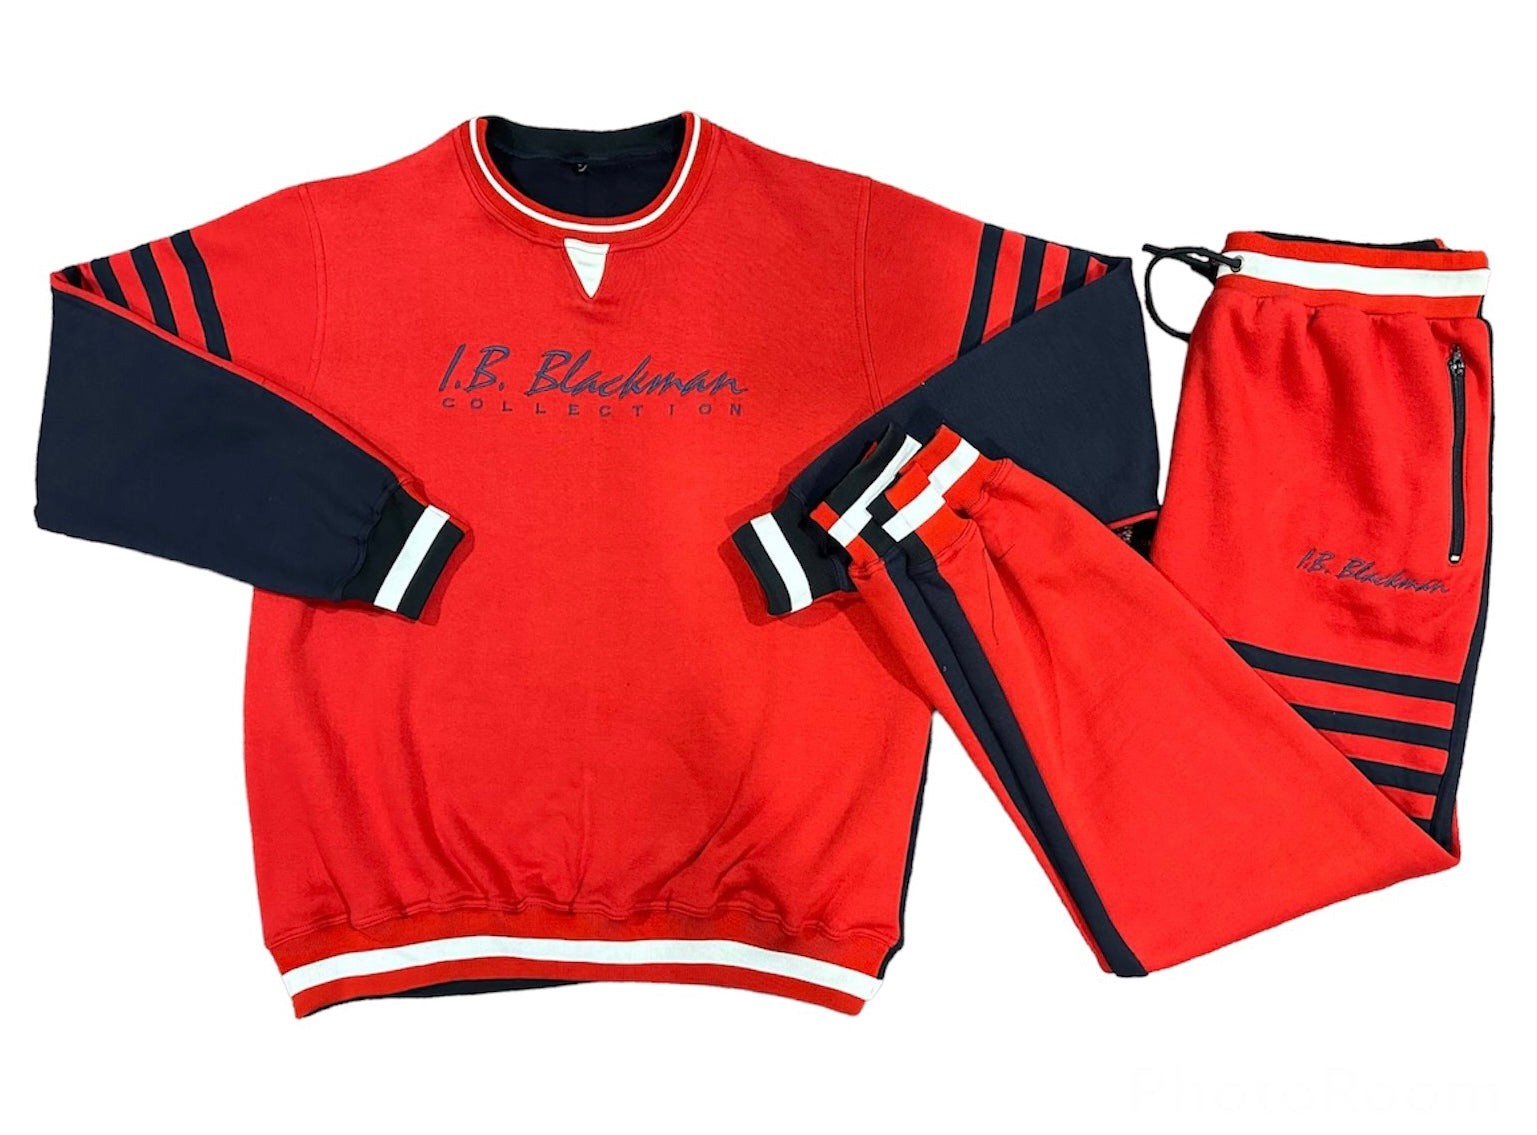 The IV Sweatshirt – I.B. Blackman